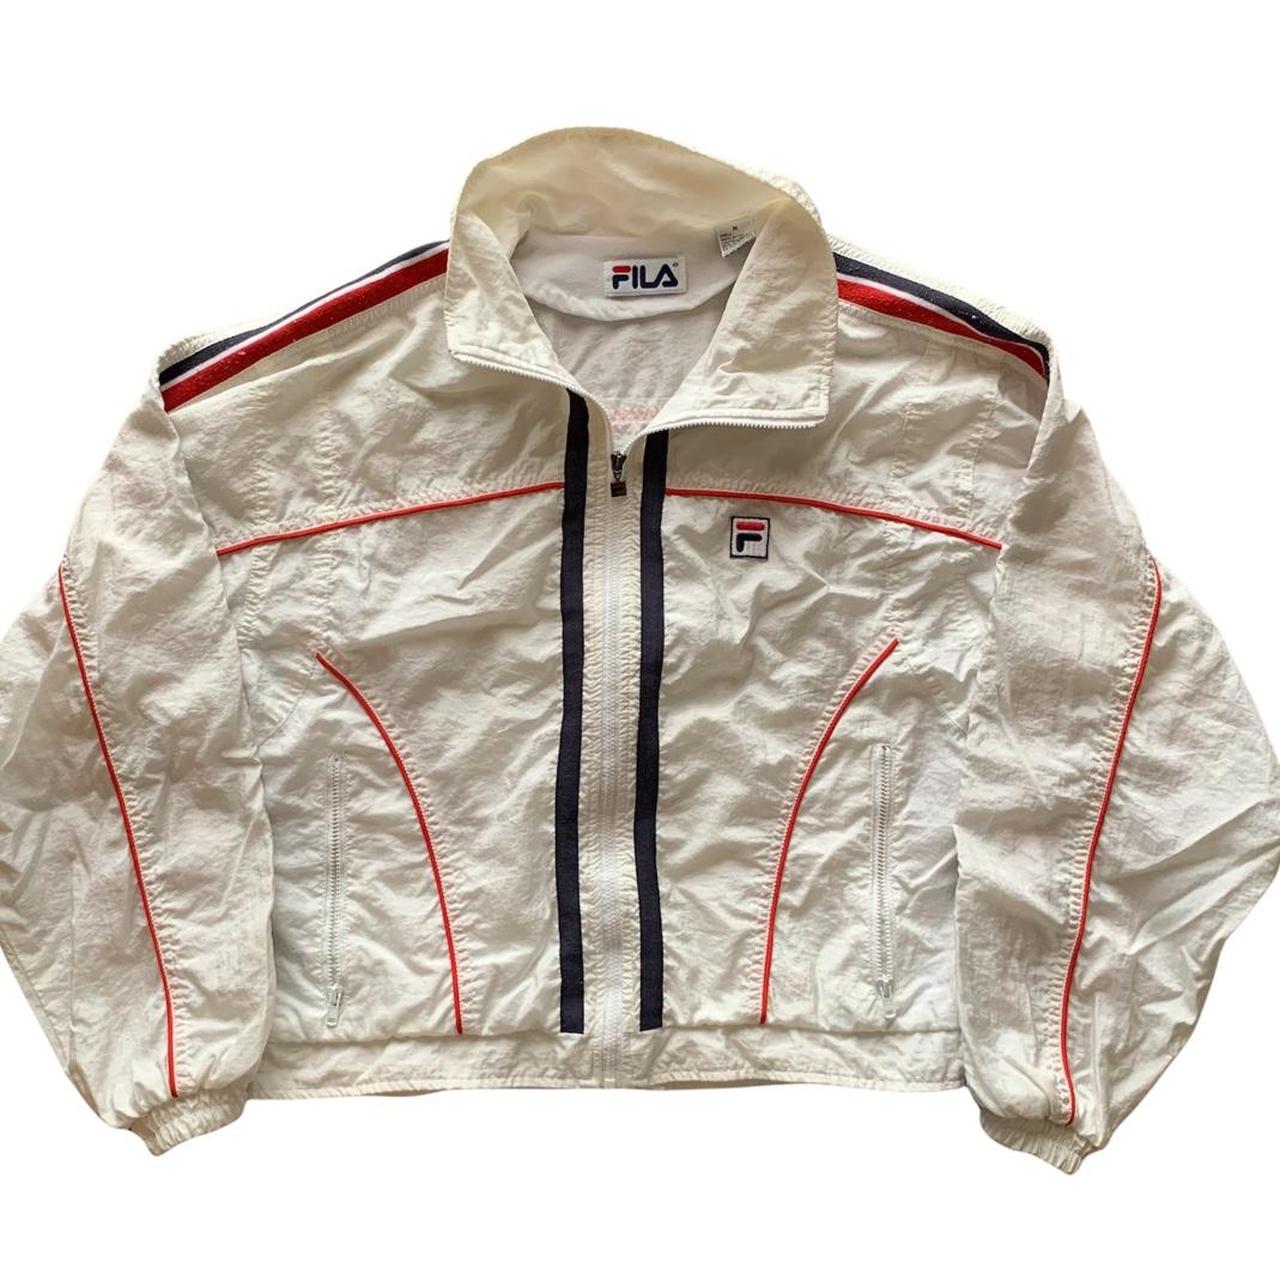 FILA vintage cropped zip up jacket Size... - Depop